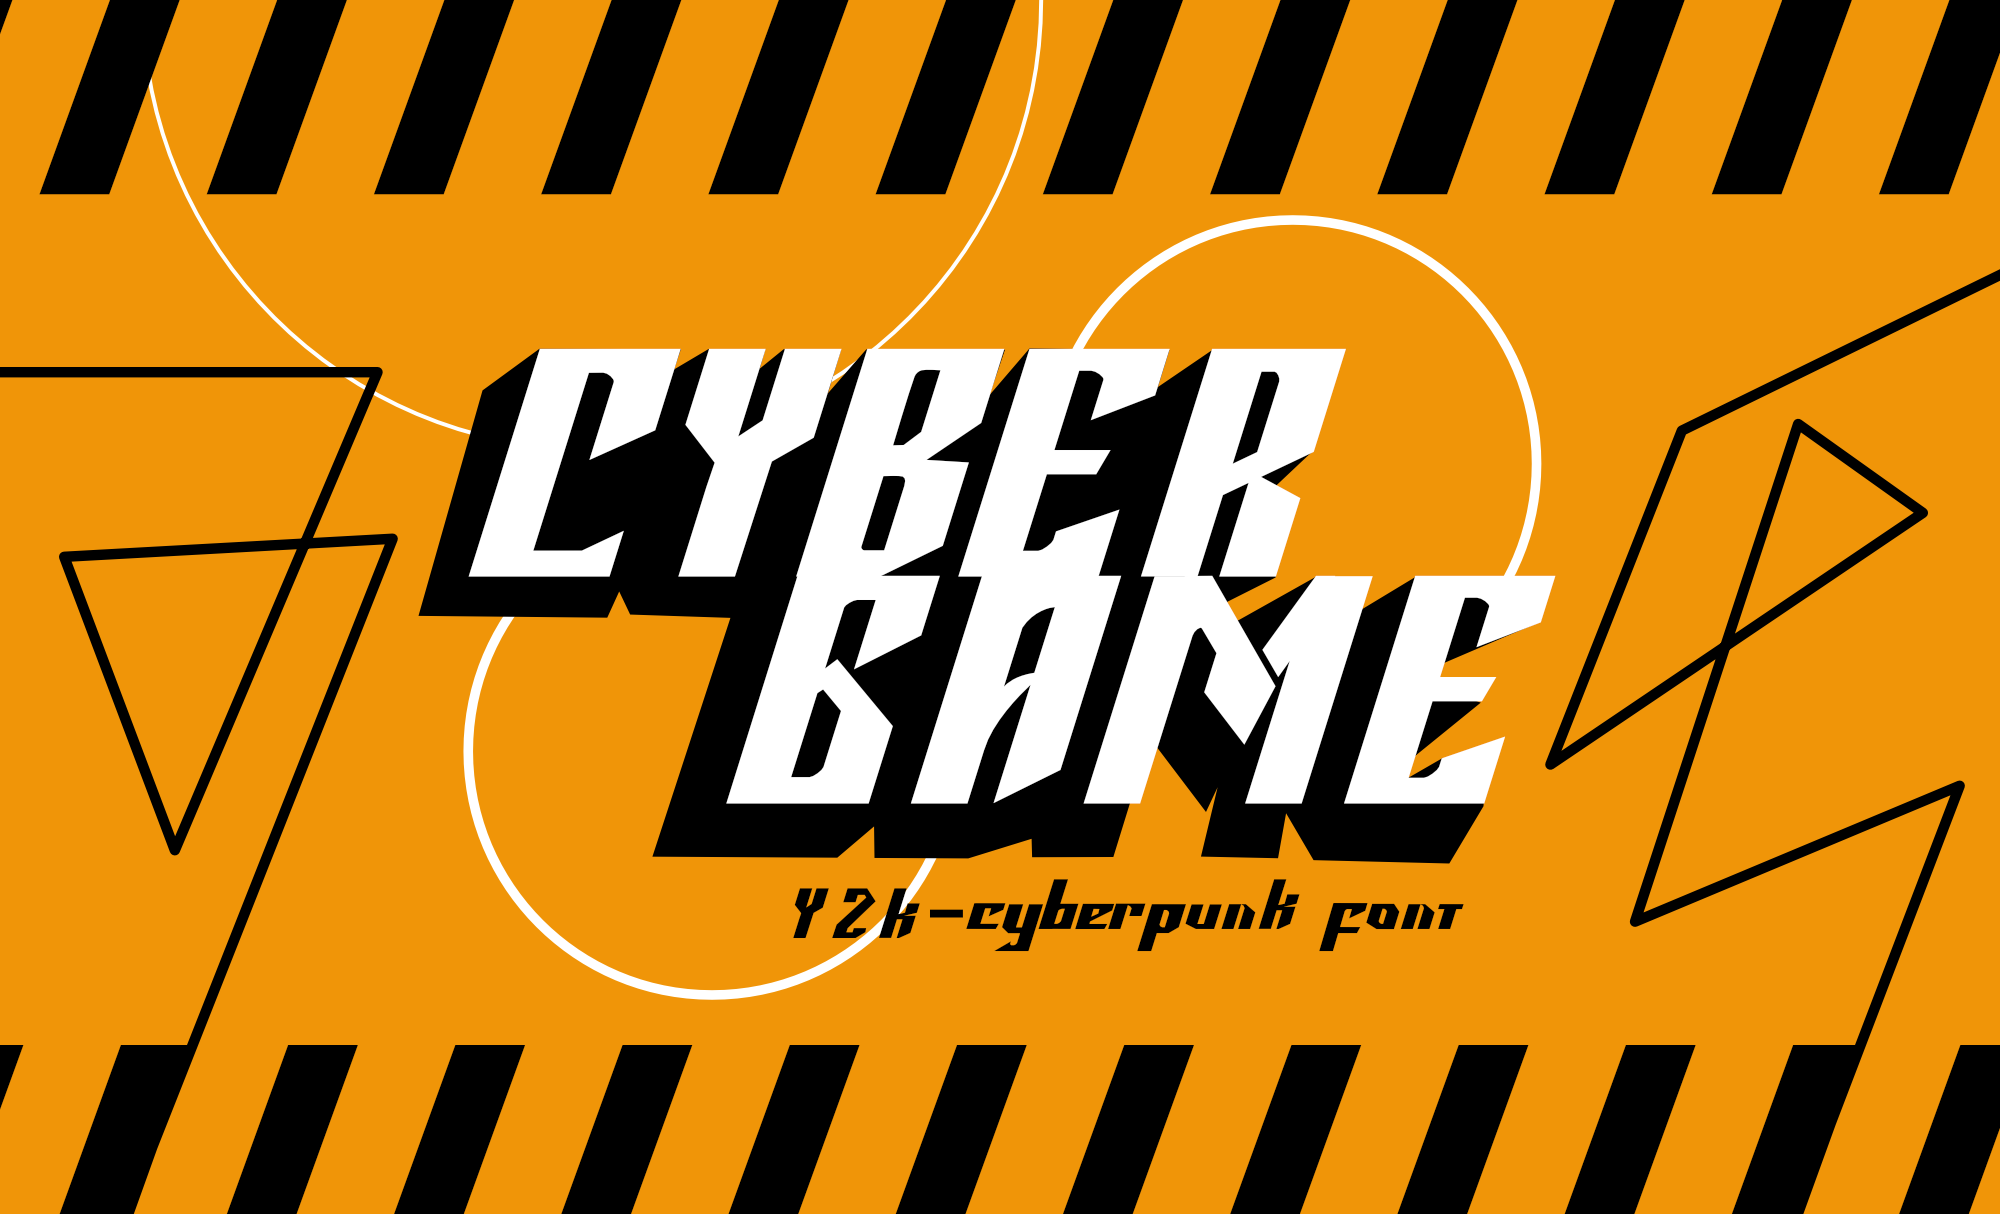 Cyber Angel Y2K Logo Font by HipFonts on Dribbble